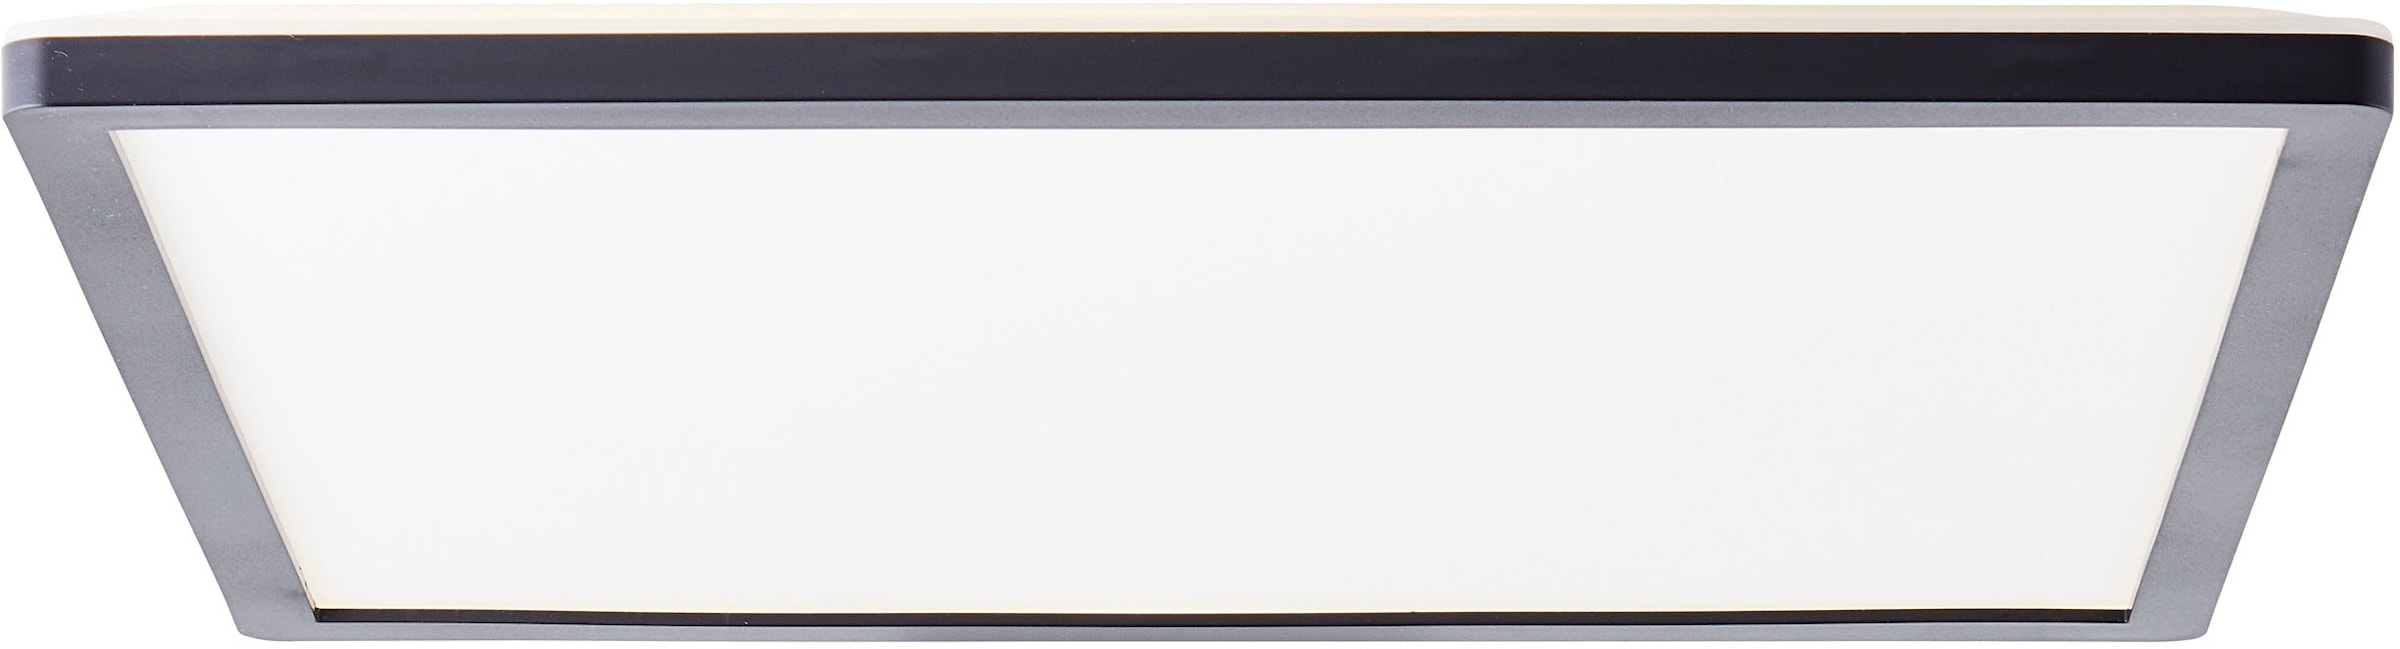 cm, 4000 schwarz/weiß | 3200 my »Evita«, Kelvin, Lumen, Deckenleuchte UNIVERSAL x 42 42 LED home kaufen